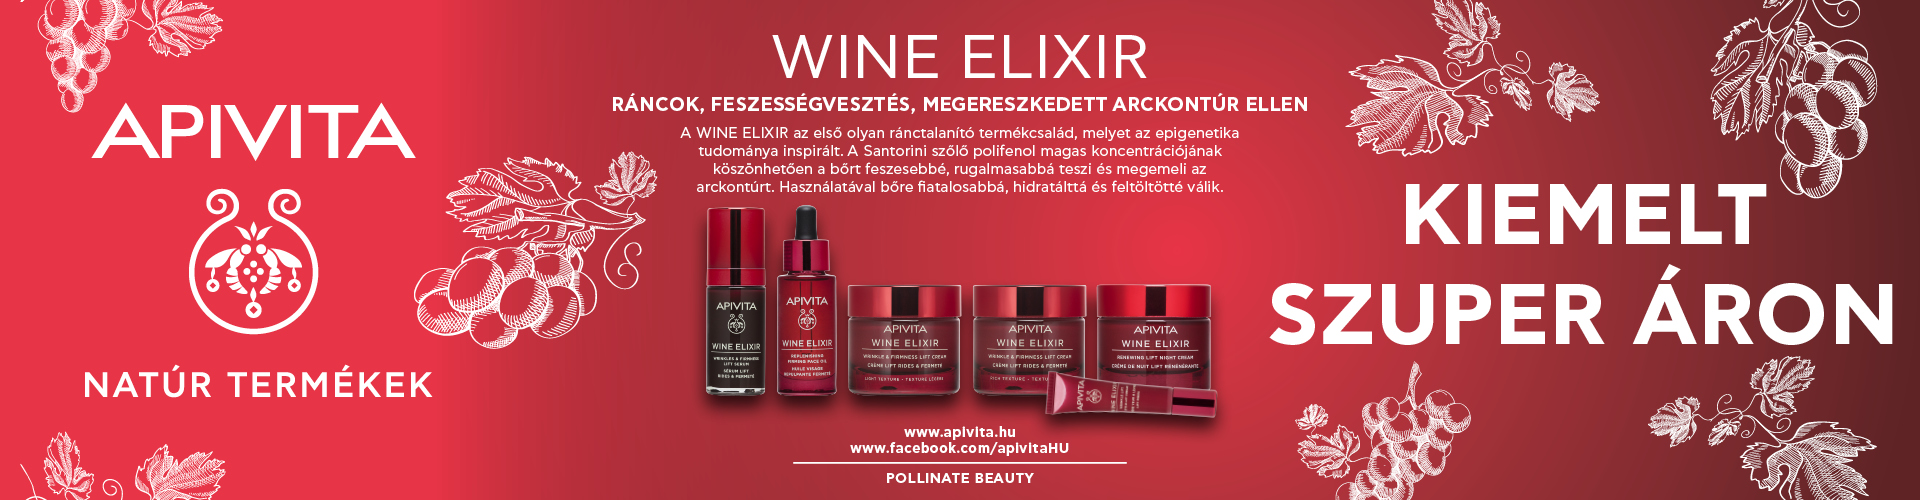 2022.  november 1. és 2023. január 15. között az Apivita Wine Elixir termékek kiemelt szuper áron rendelhetők meg nálunk!